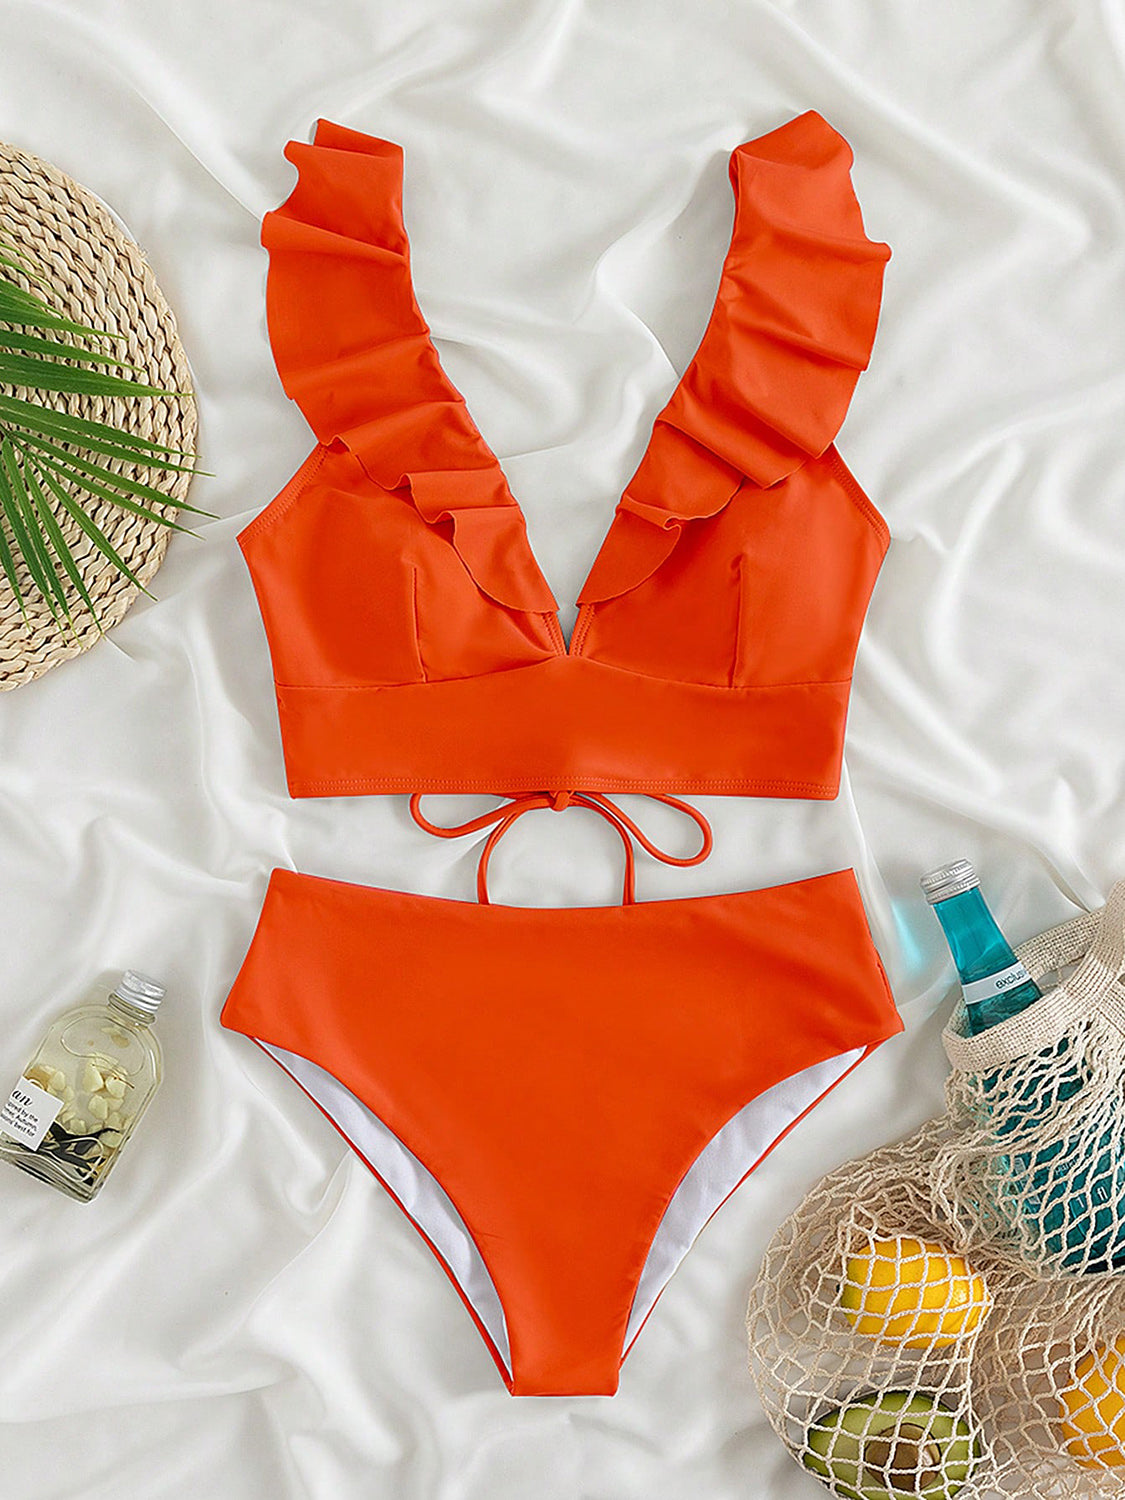 TEEK - Ruffled V-Neck Sleeveless Bikini SWIMWEAR TEEK Trend Red Orange S 